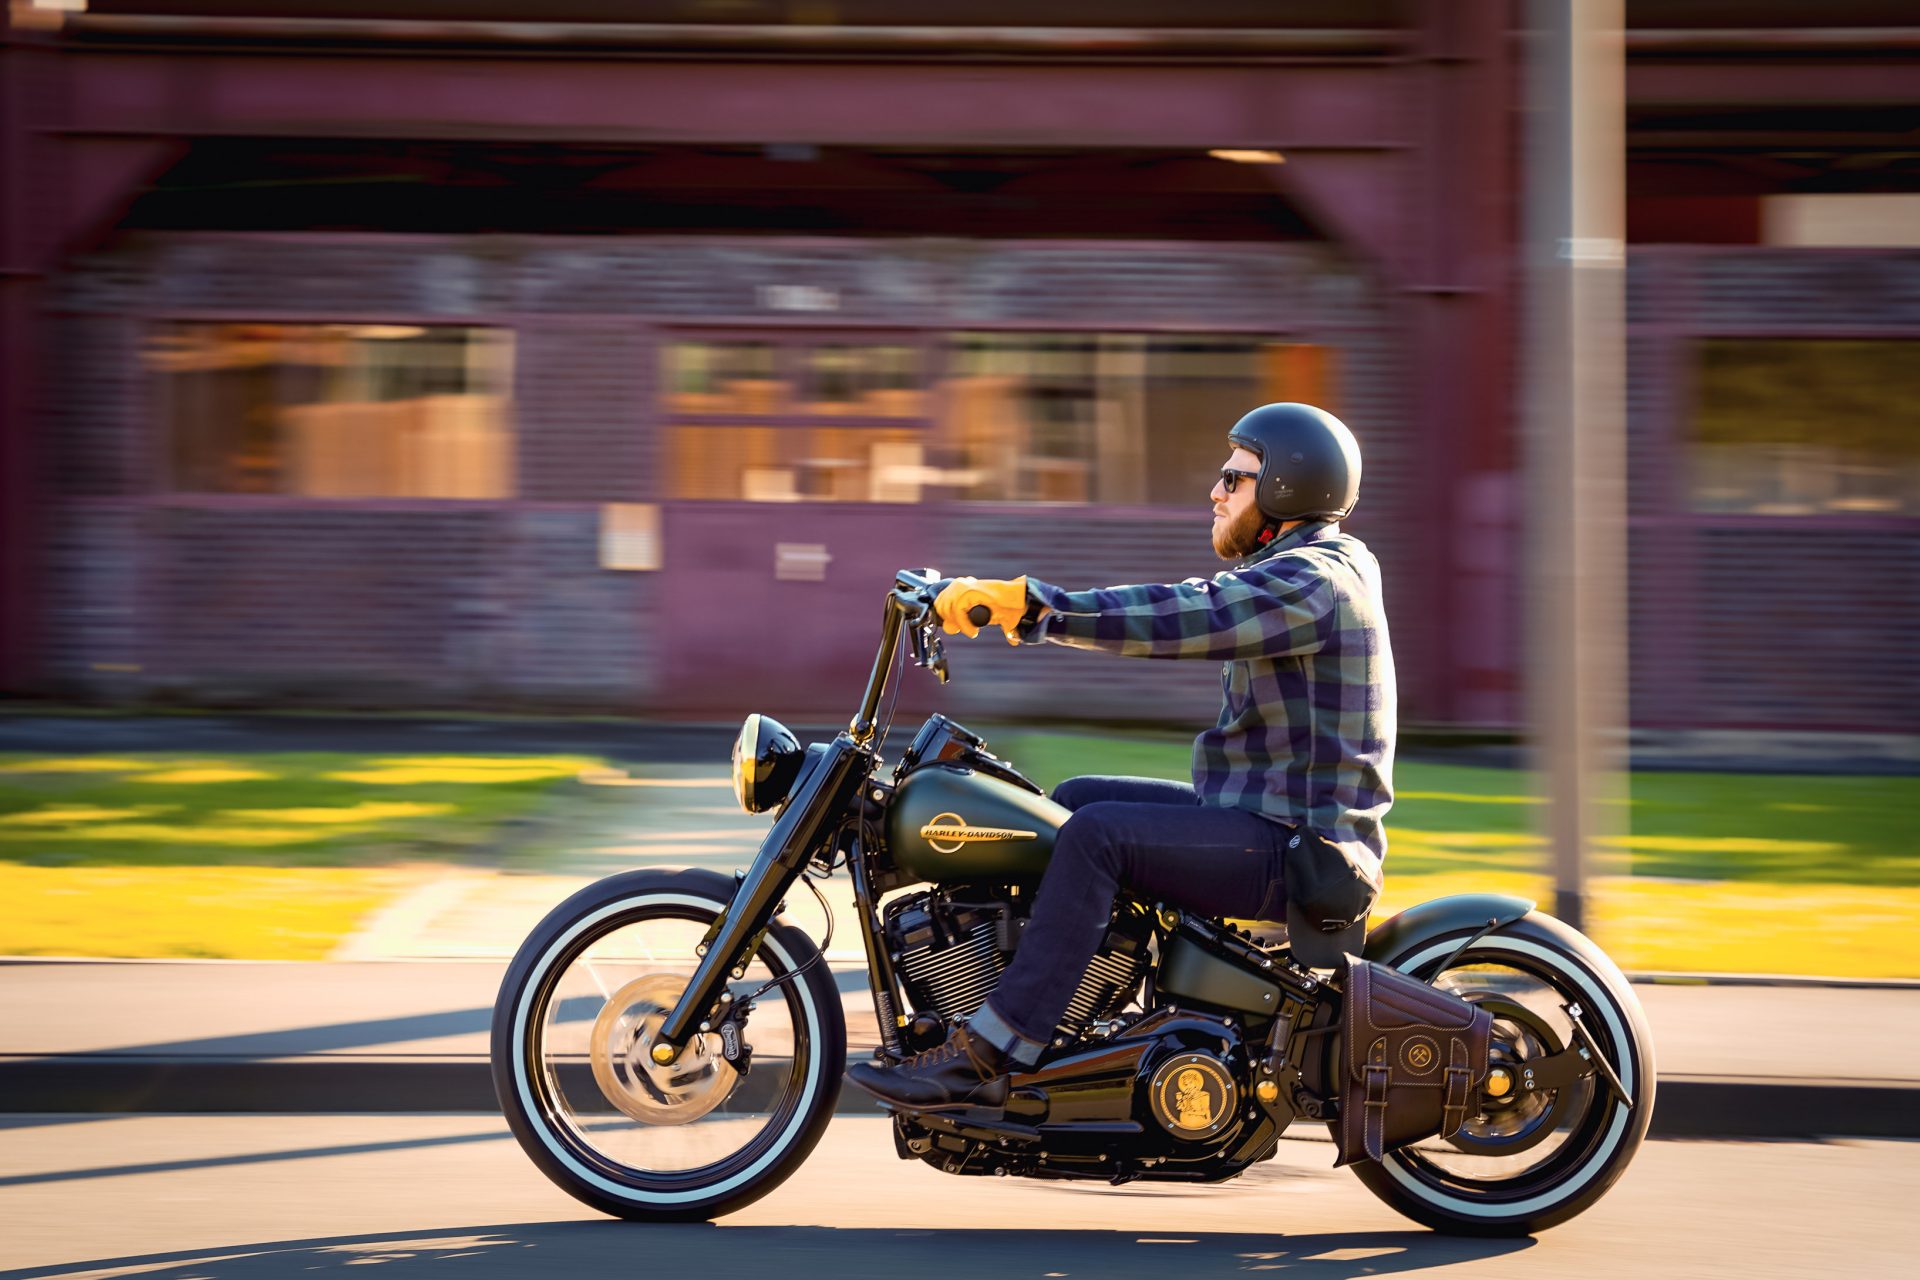 Thunderbike Mallet & Iron • customized Harley-Davidson Heritage 